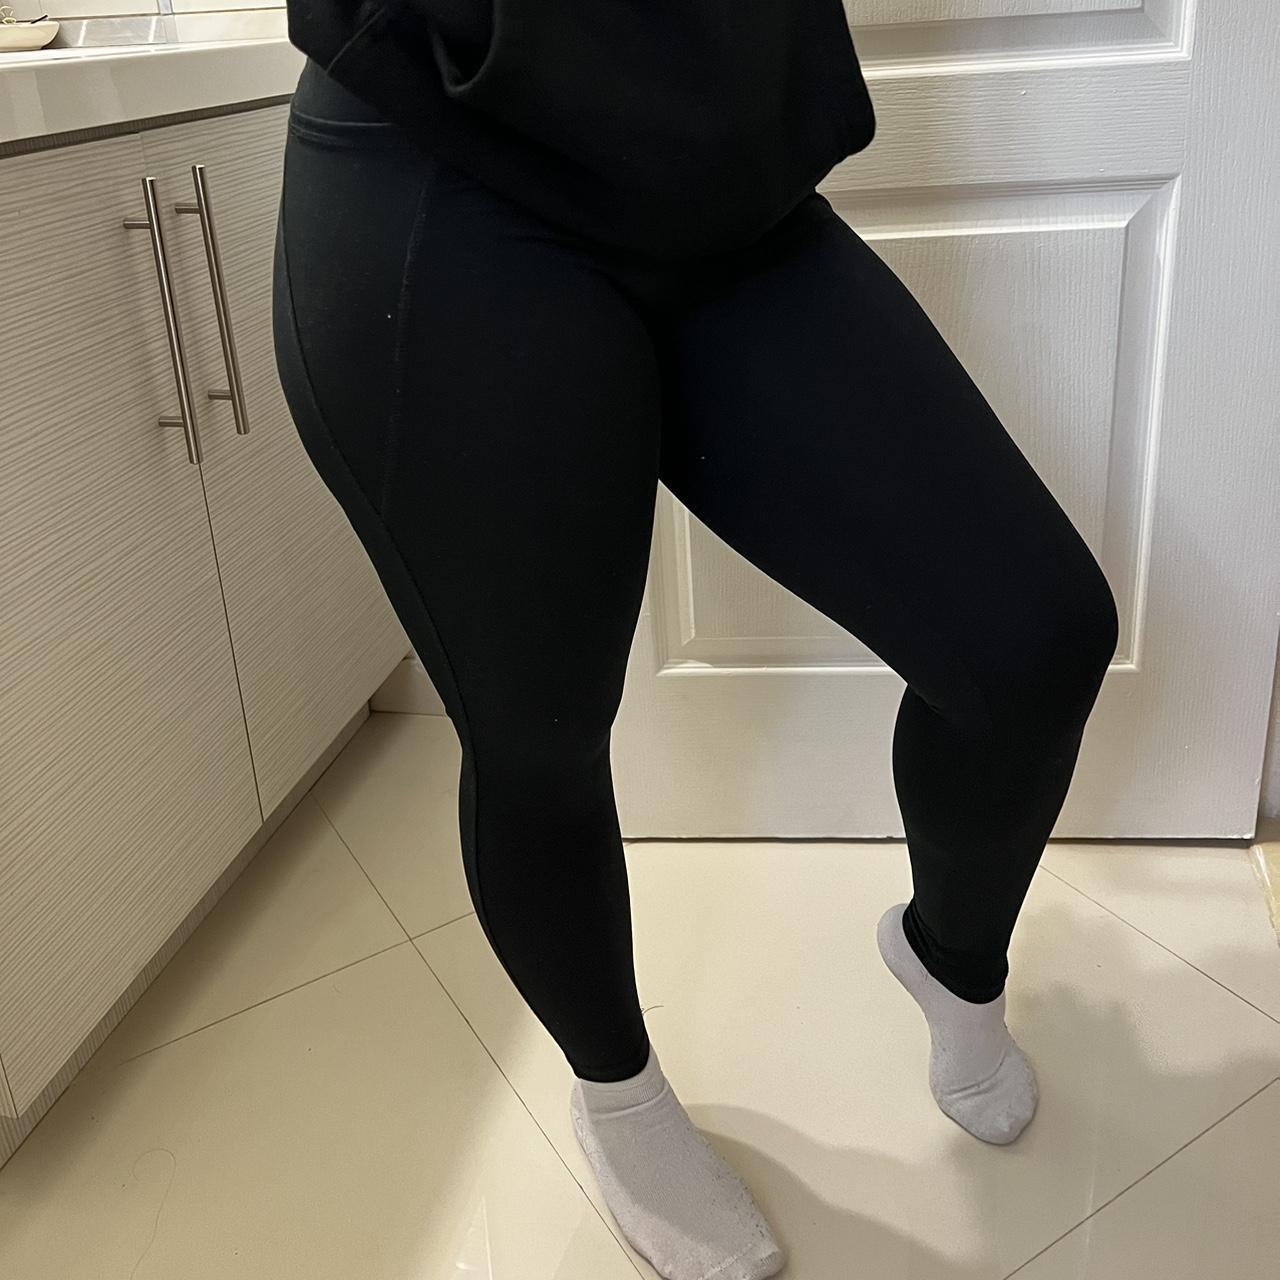 Black leggings , Size medium